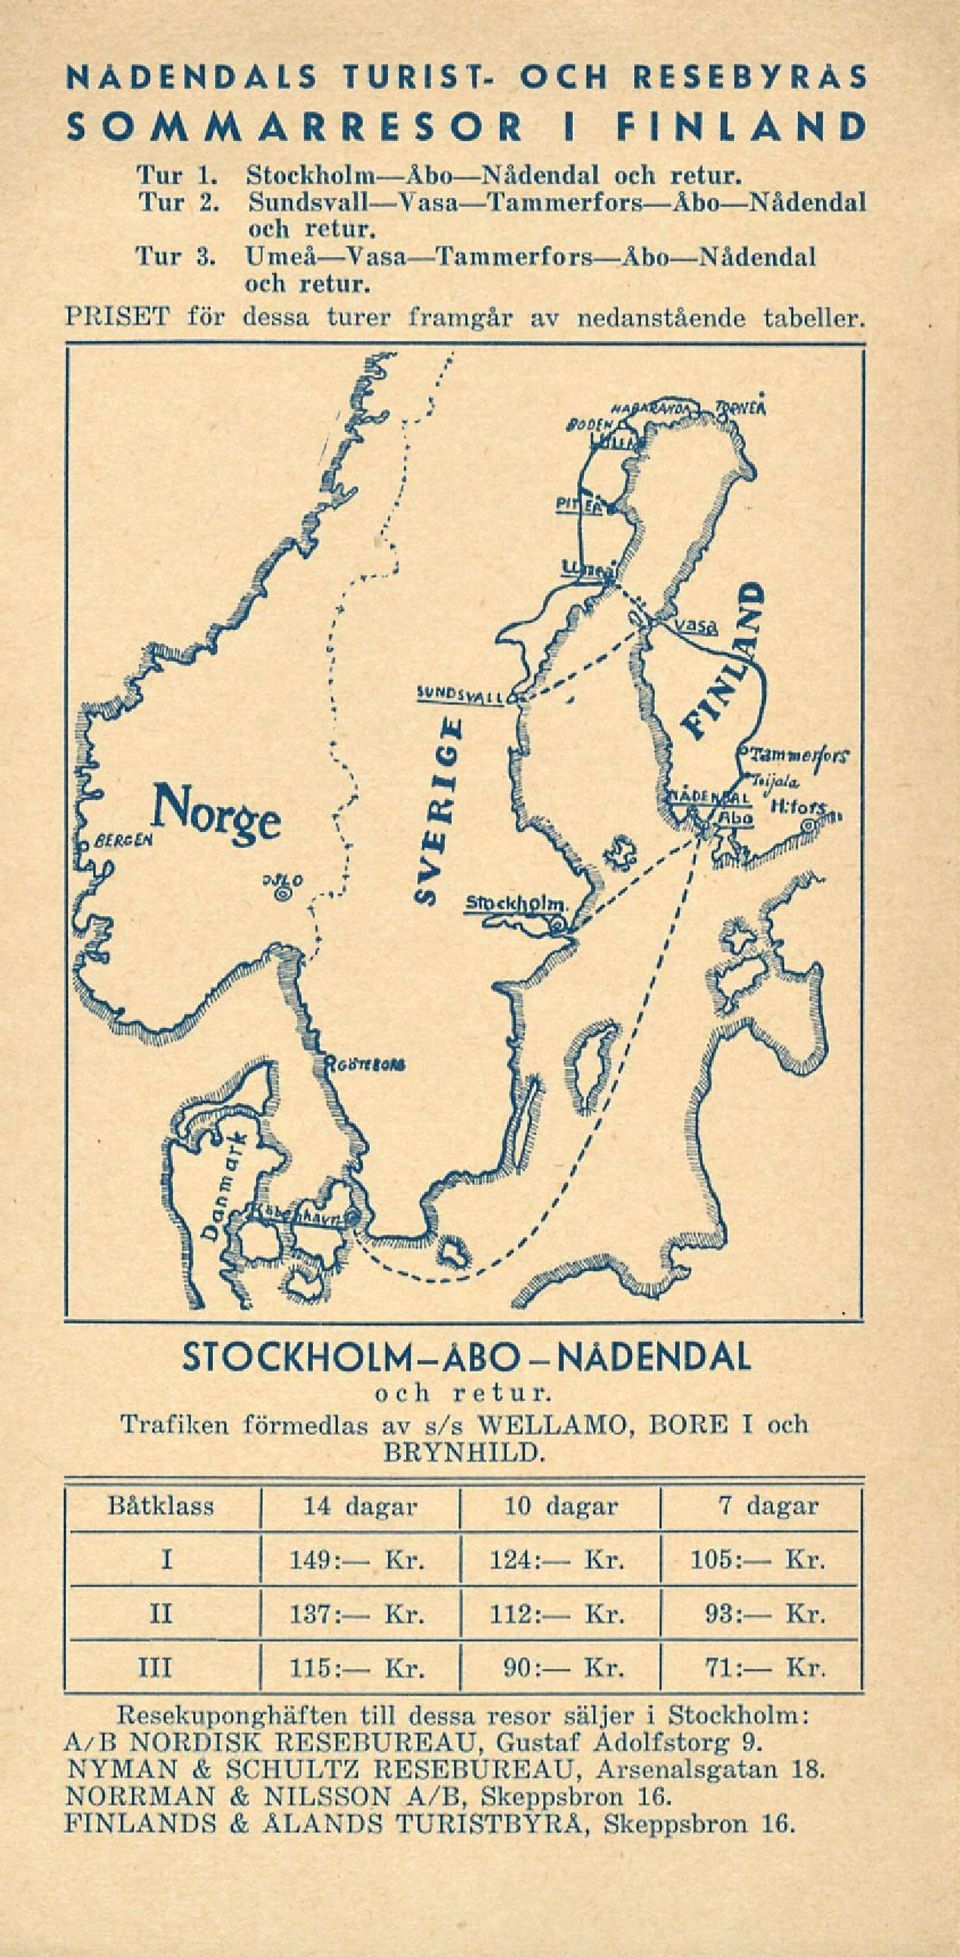 - STOCKHOLM-ÅBO NÅDENDAL Trafiken förmedlas av s/s WELLAMO, BORE I och BRYNHILD. Båtklass 14 dagar 10 dagar 7 dagar I 149: Kr. 124: Kr. 105: Kr. II 111 I Kr. Kr. 93: Kr.